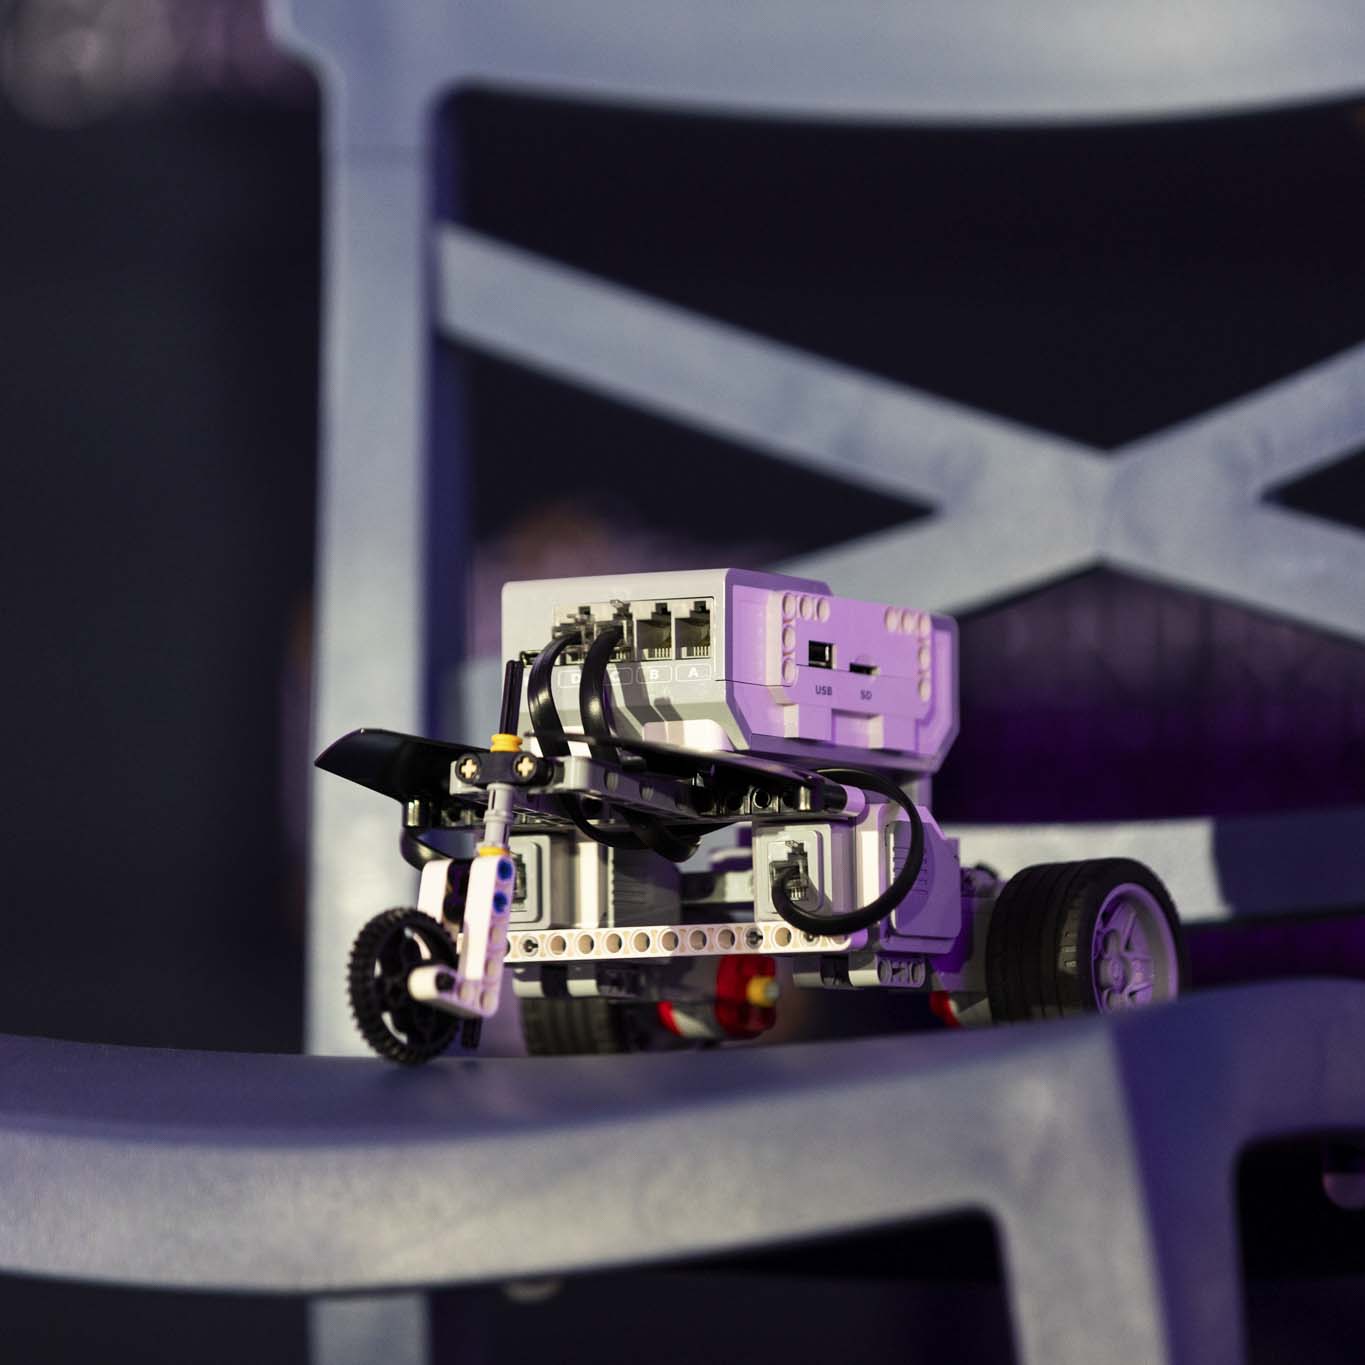 Na krześle postawiony jest robot. Niewielki, złożony z klocków, na trzech kołach.